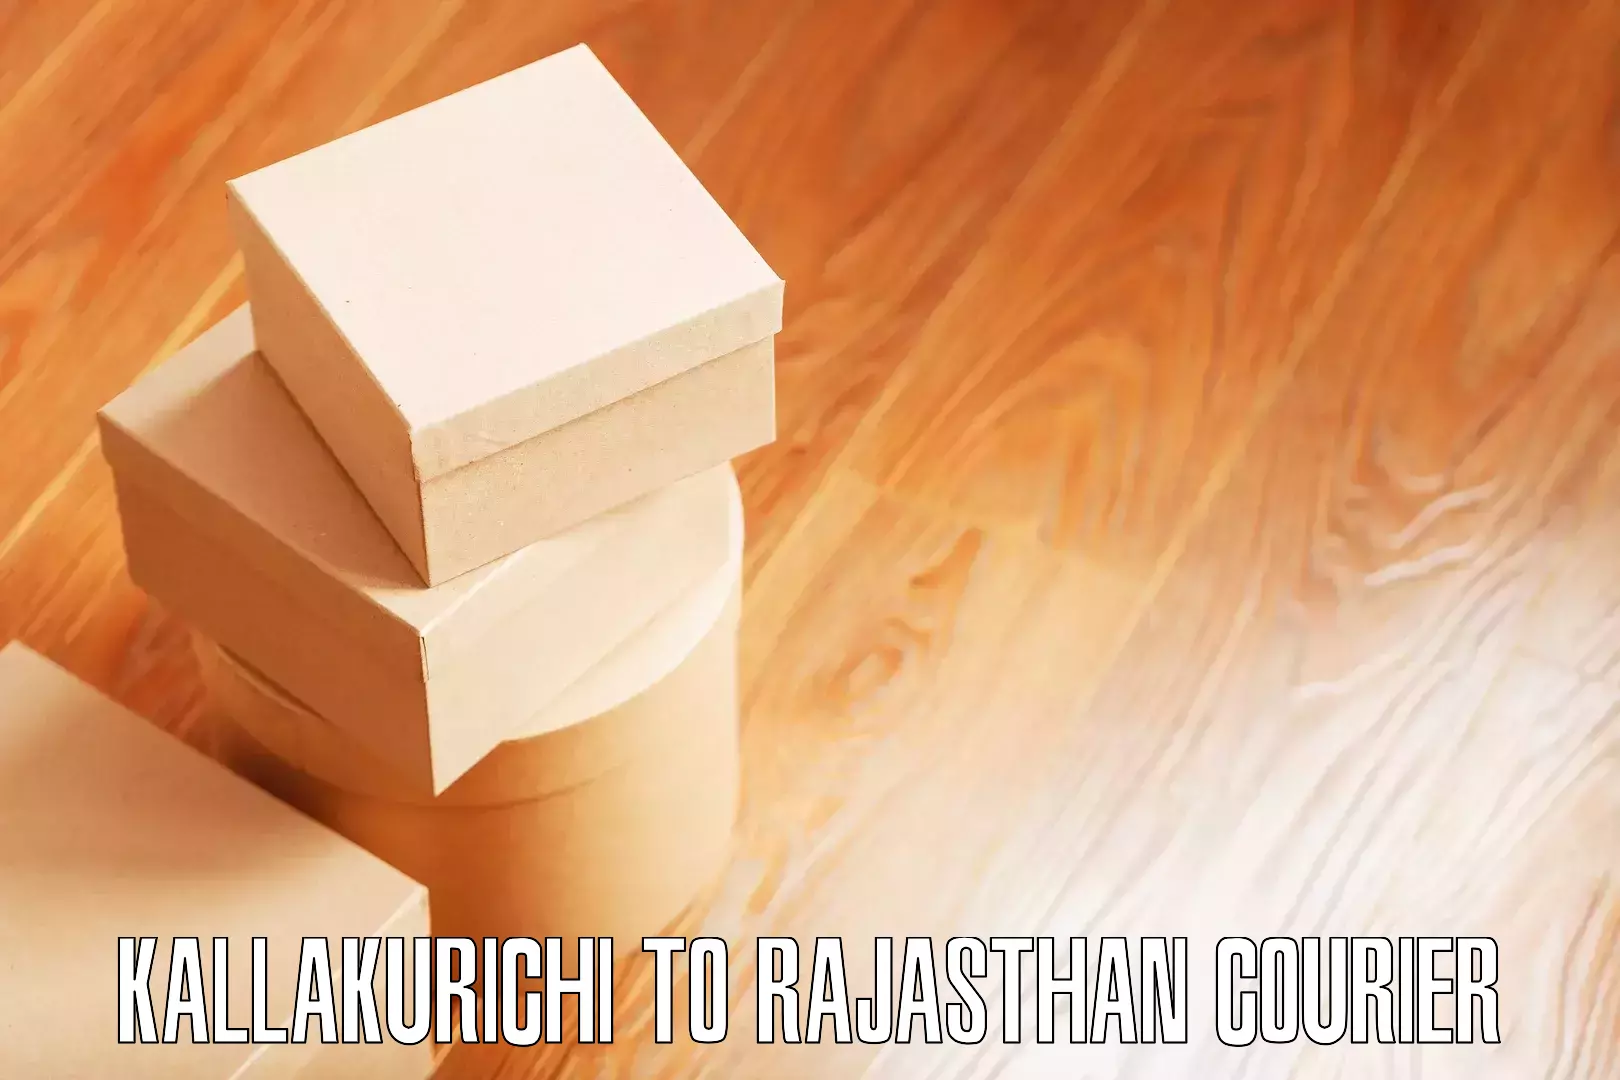 Nationwide furniture transport Kallakurichi to Rajasthan